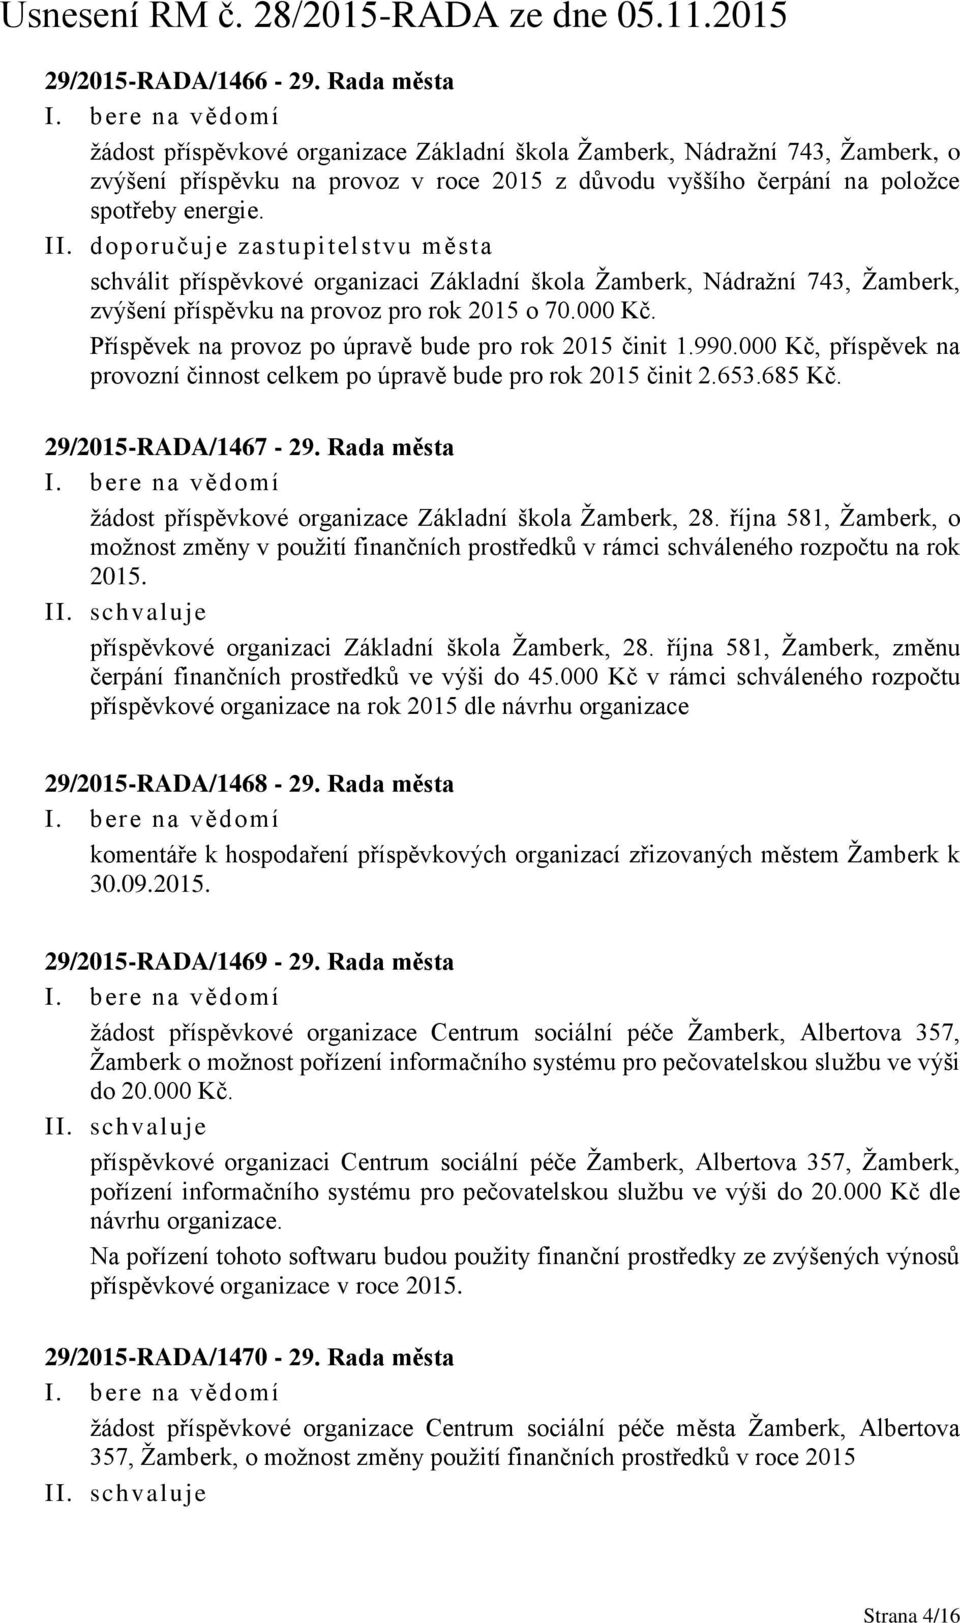 doporučuje zastupitelstvu města schválit příspěvkové organizaci Základní škola Žamberk, Nádražní 743, Žamberk, zvýšení příspěvku na provoz pro rok 2015 o 70.000 Kč.